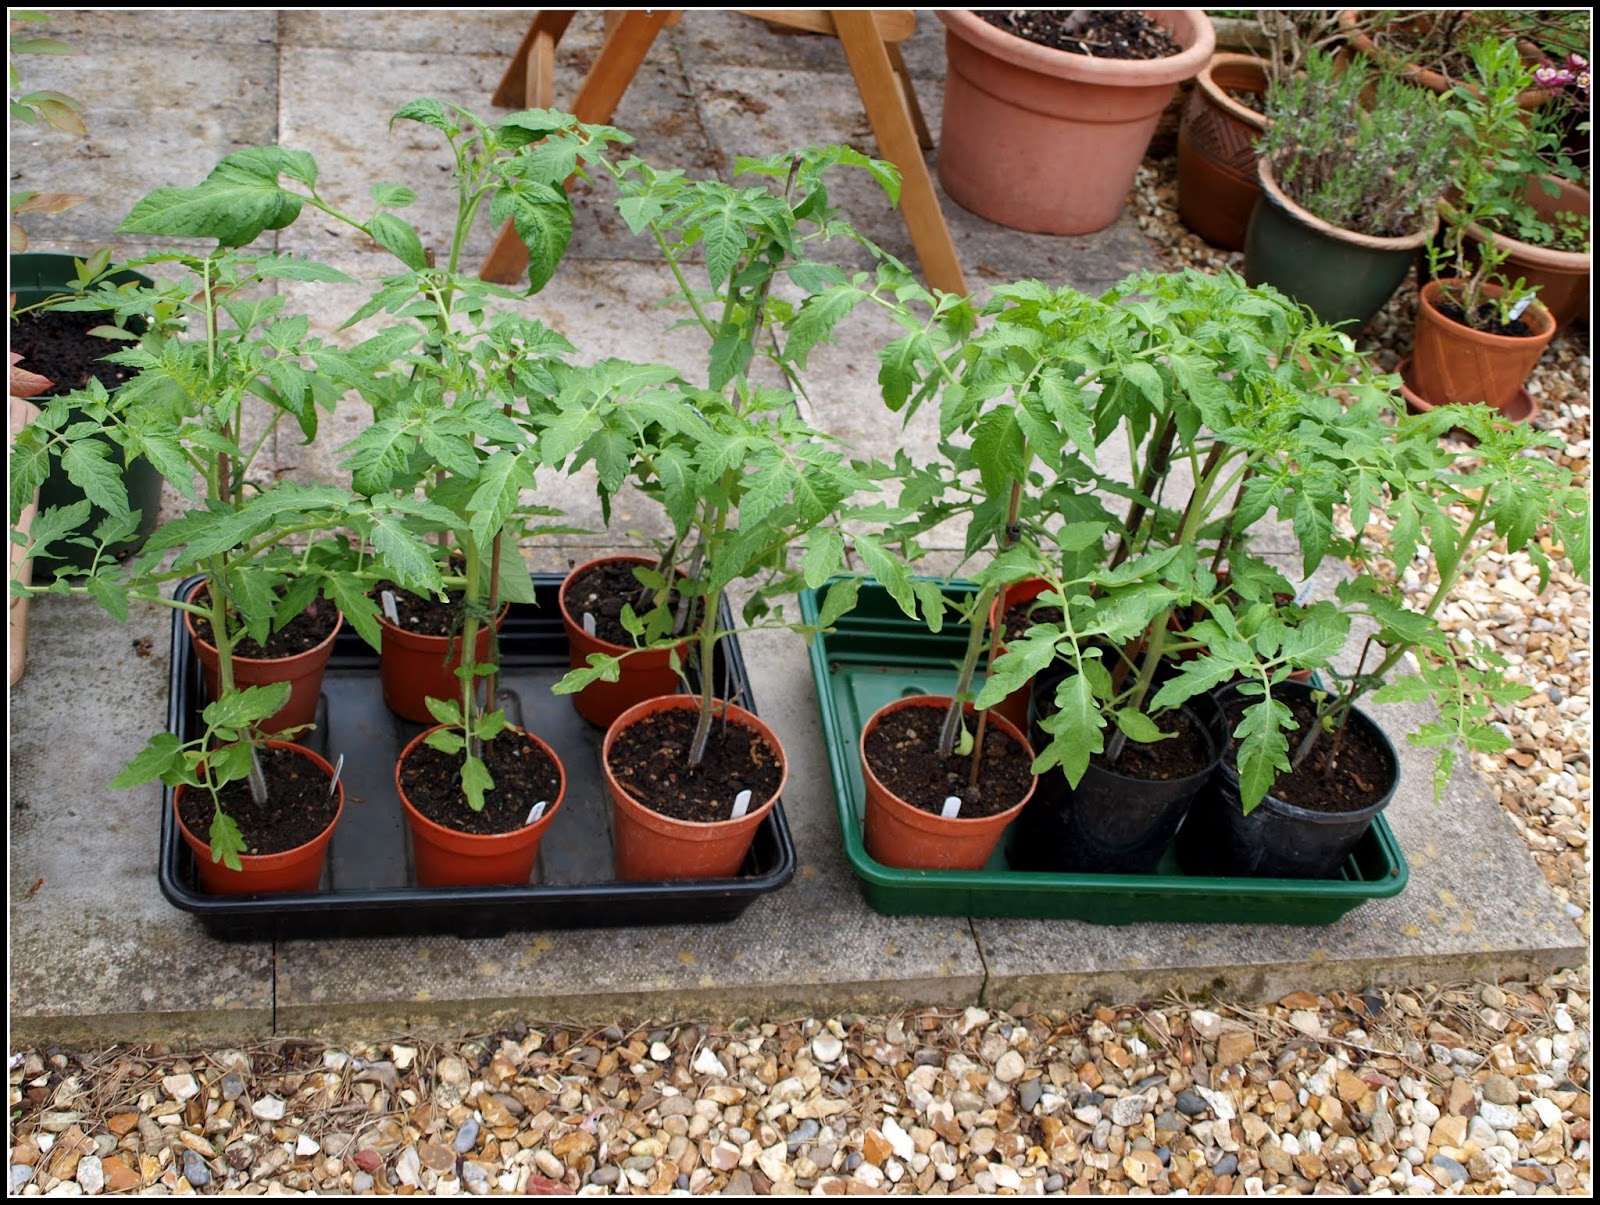 Mark's Veg Plot: Planting Tomatoes